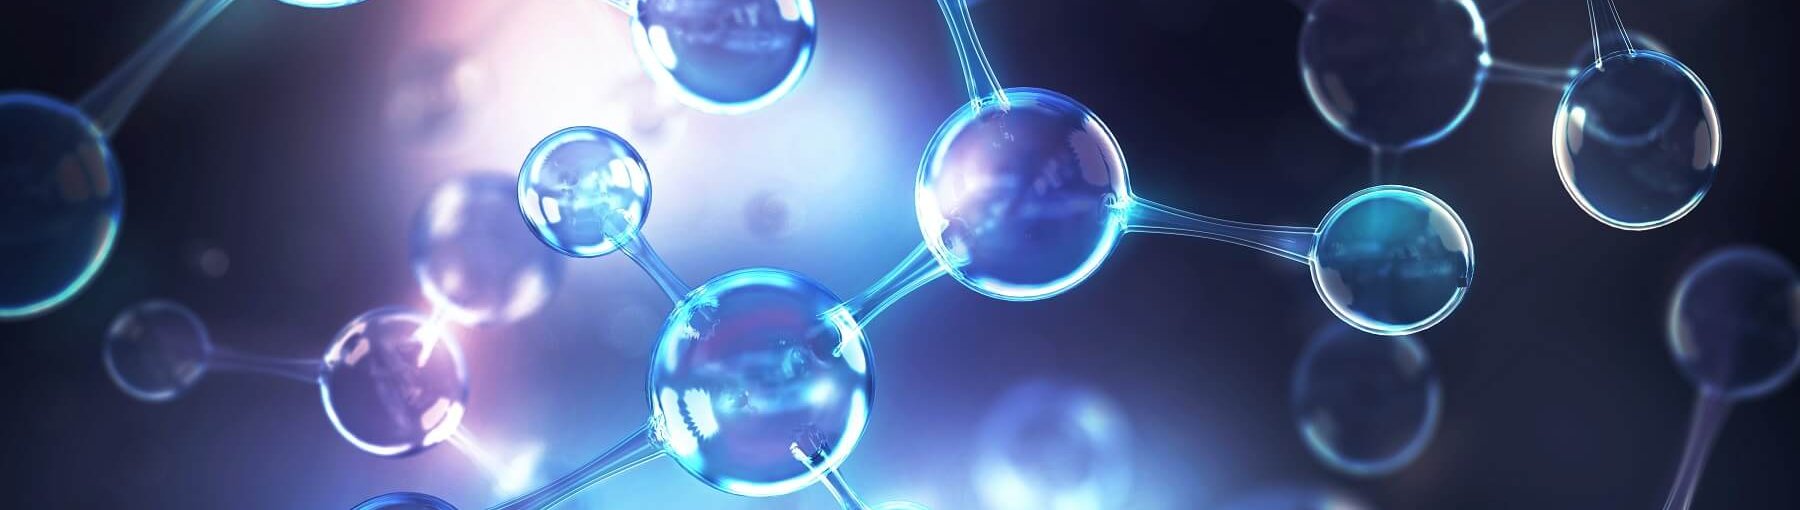 Czym są nanostruktury węglowe? Anusorn Nakdee/Shutterstock